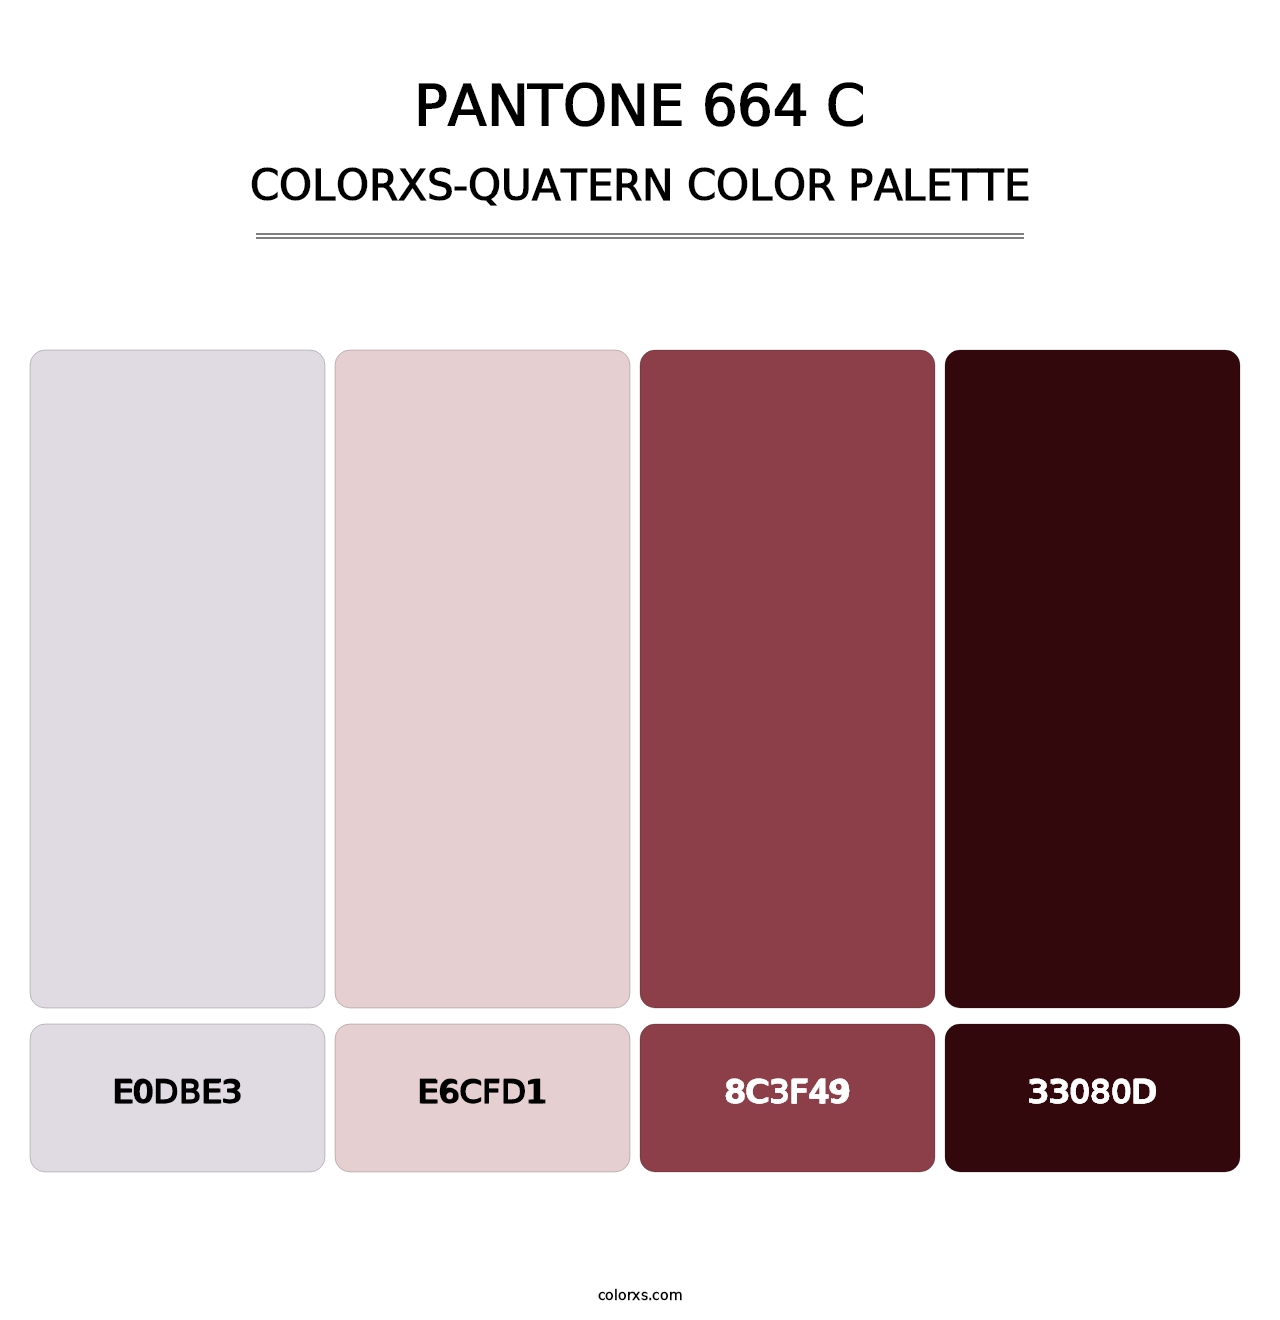 PANTONE 664 C - Colorxs Quatern Palette